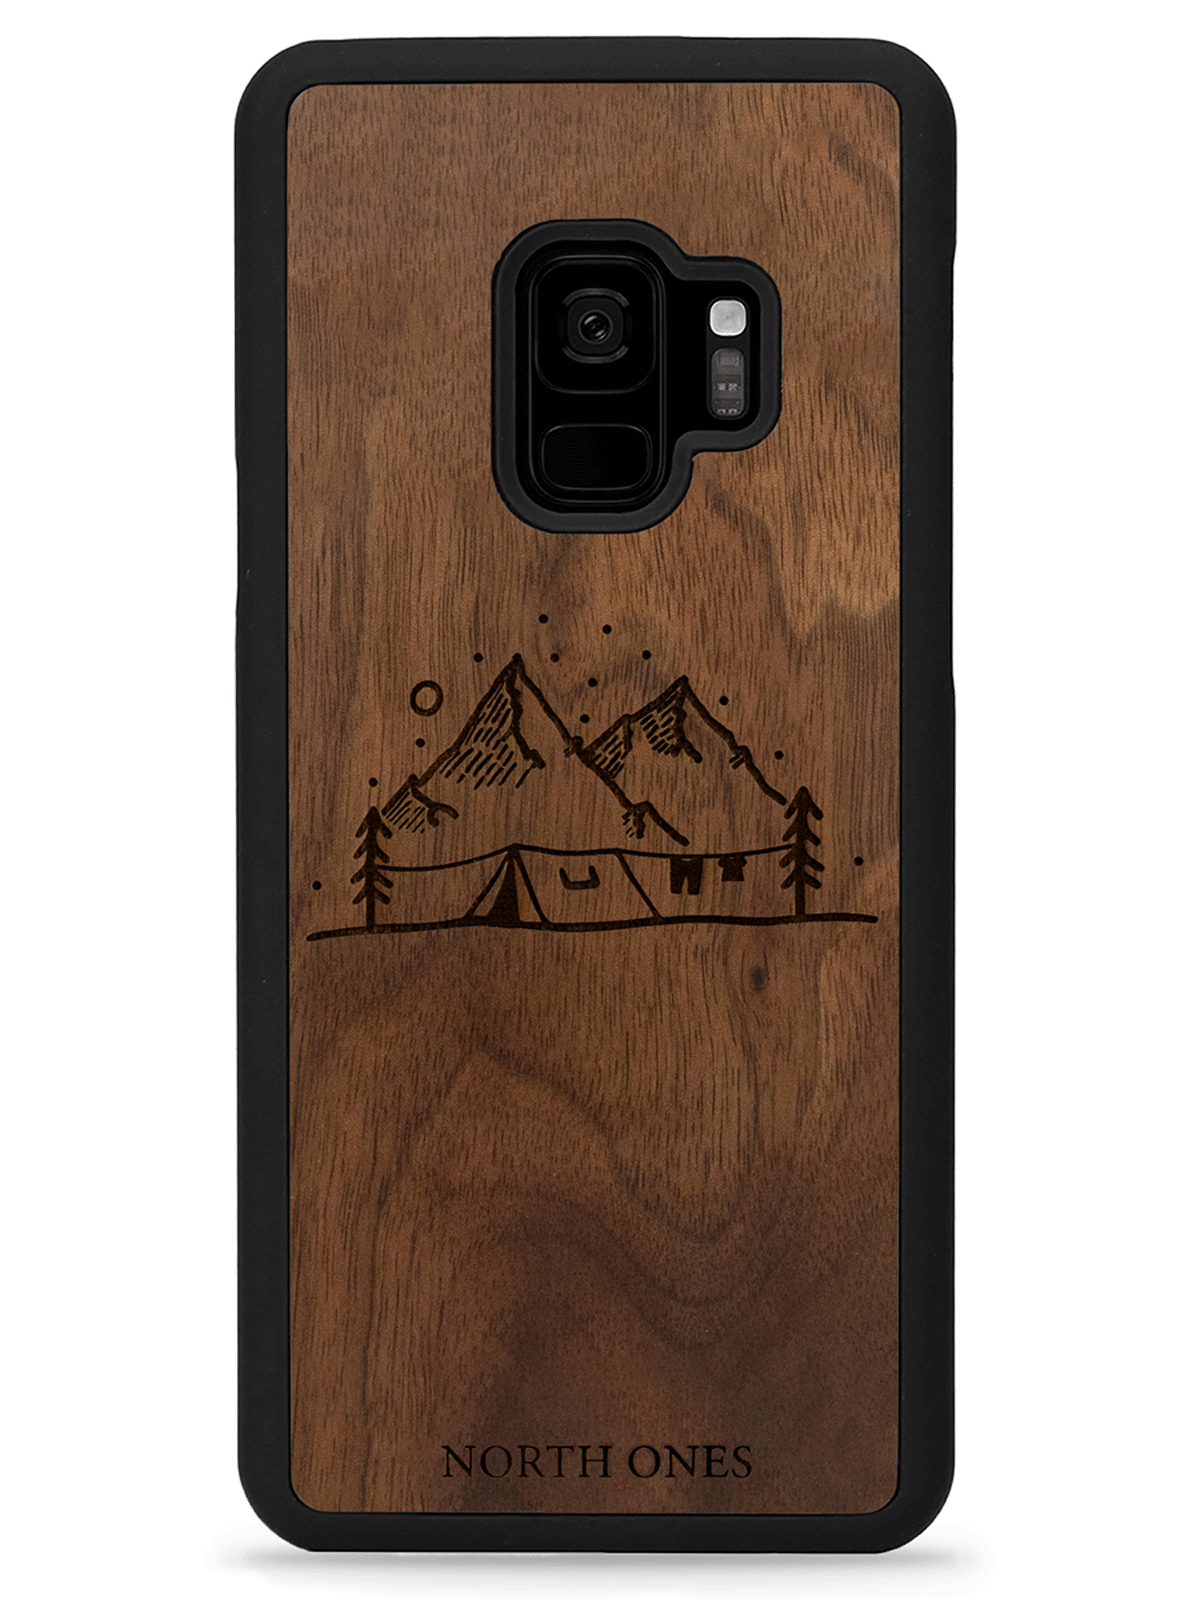 Mobilskal trä vildmark walnut inivildmarken edition Samsung galaxy S9